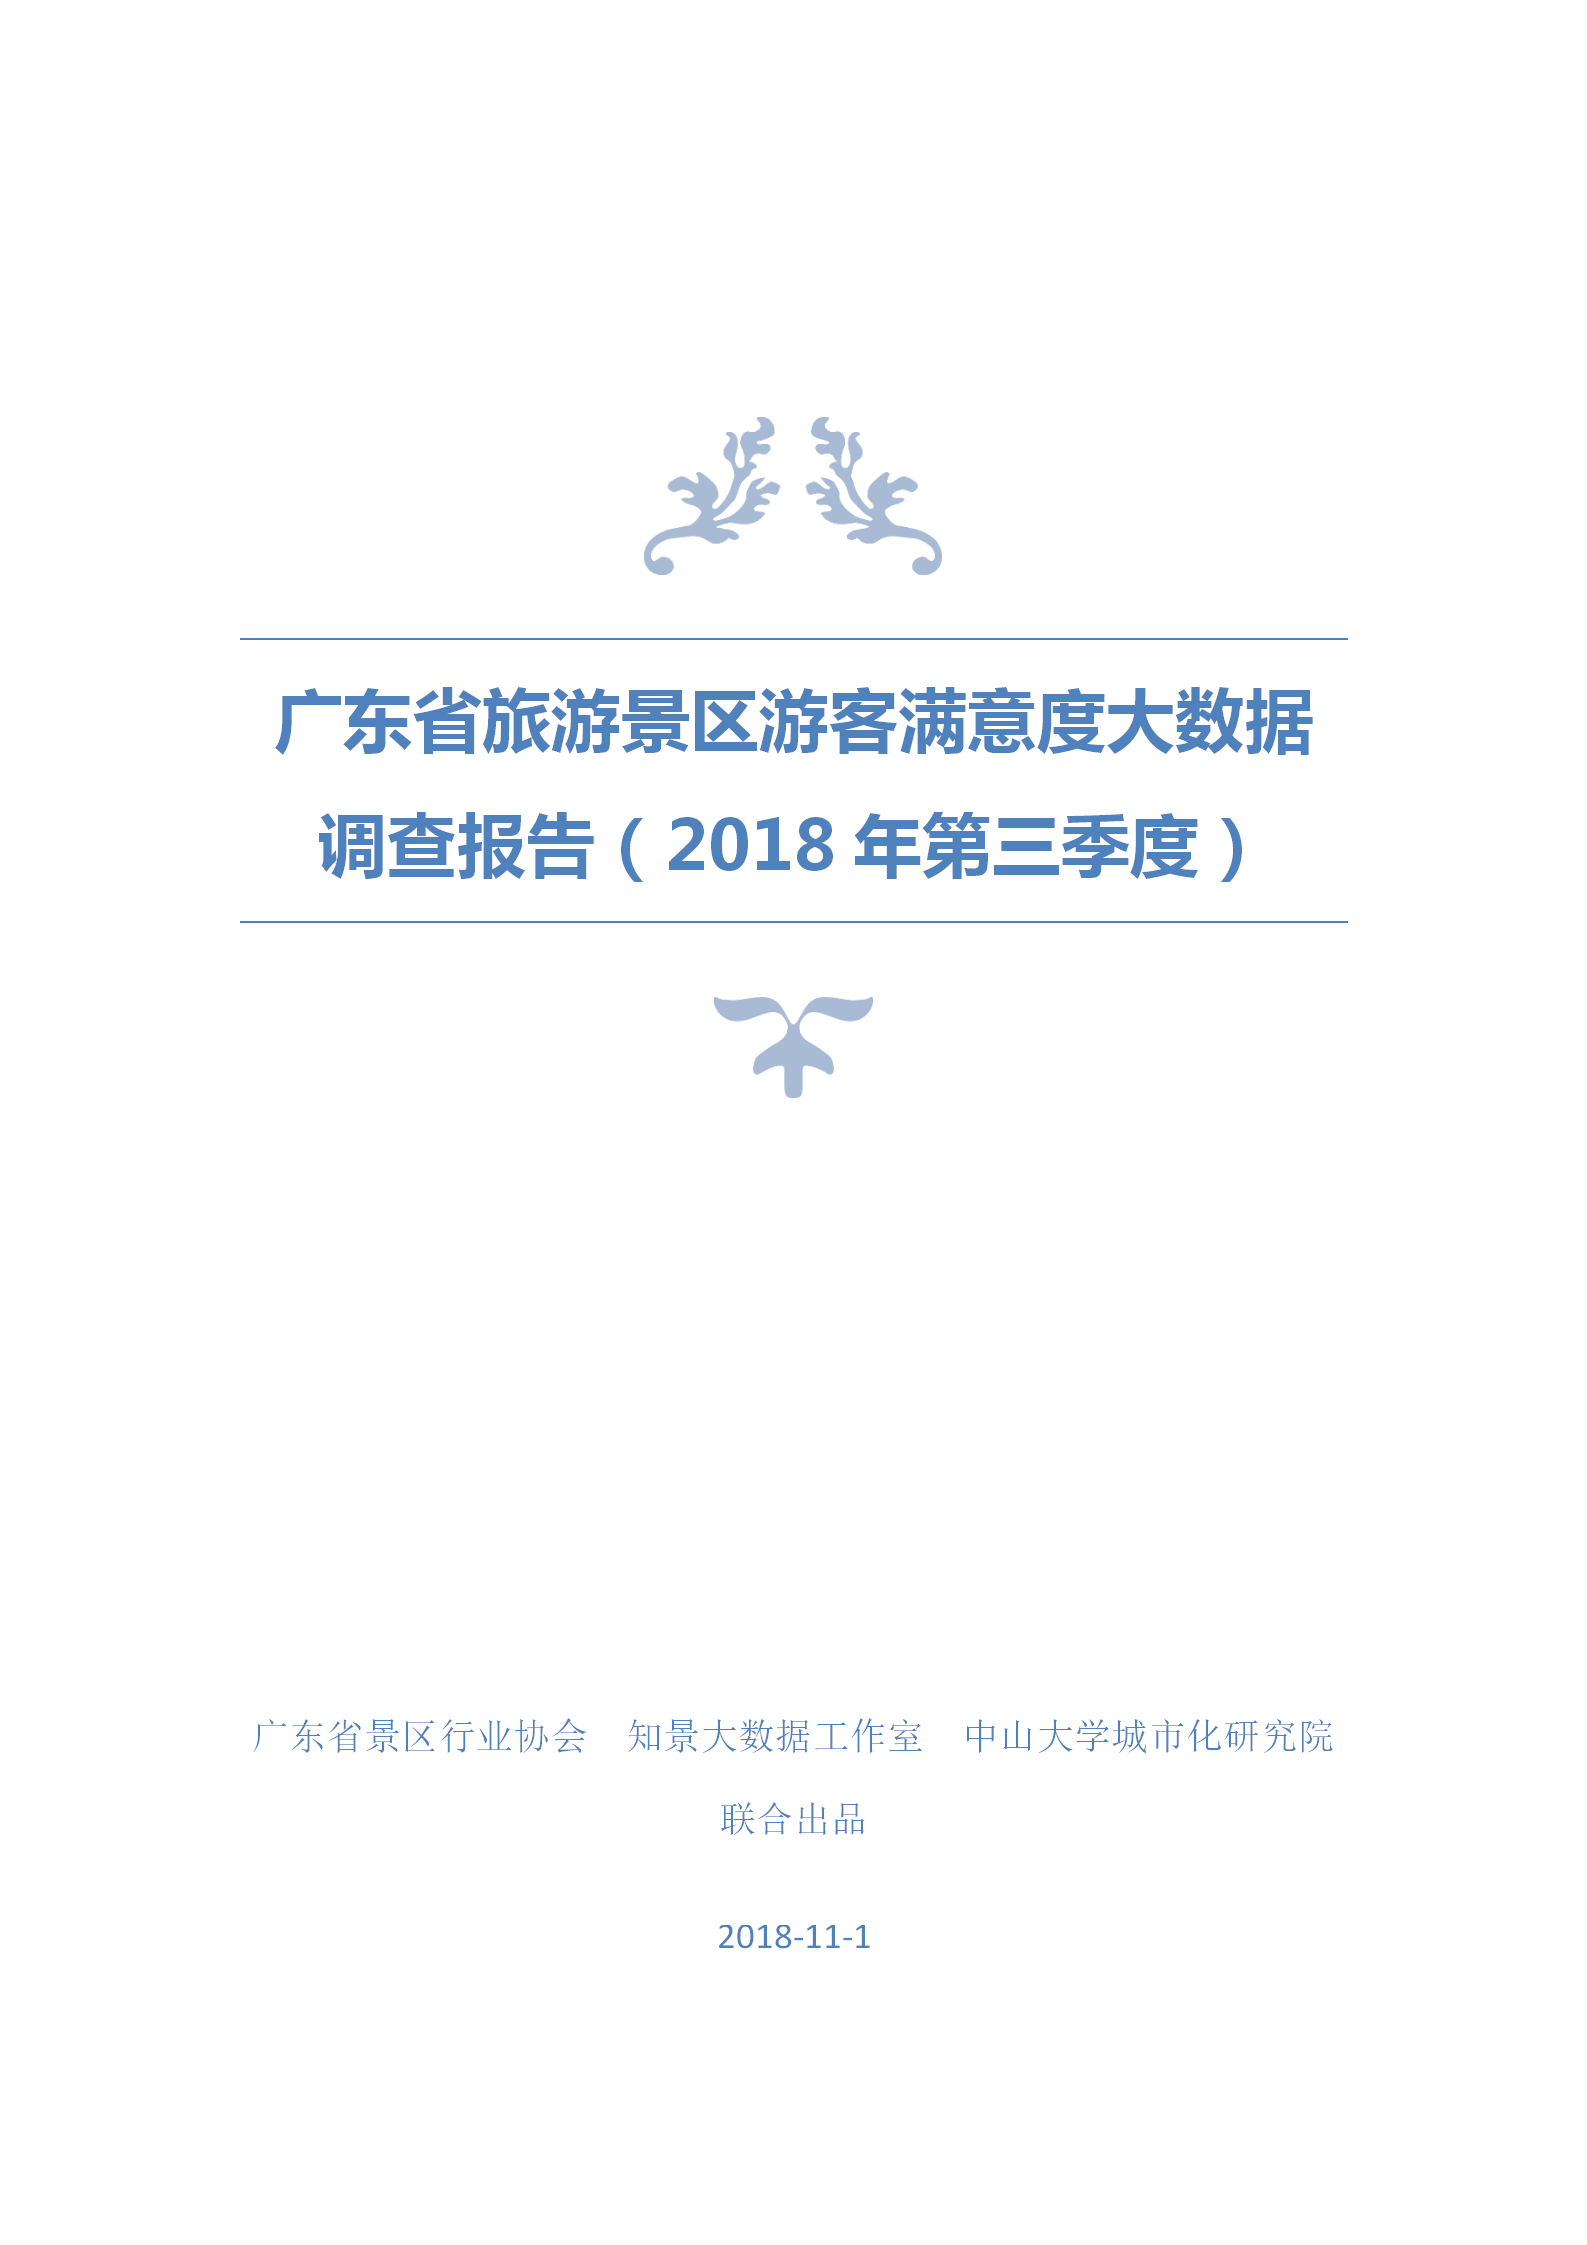 广东省旅游景区游客满意度大数据调查报告-2018年第三季度20181106_01